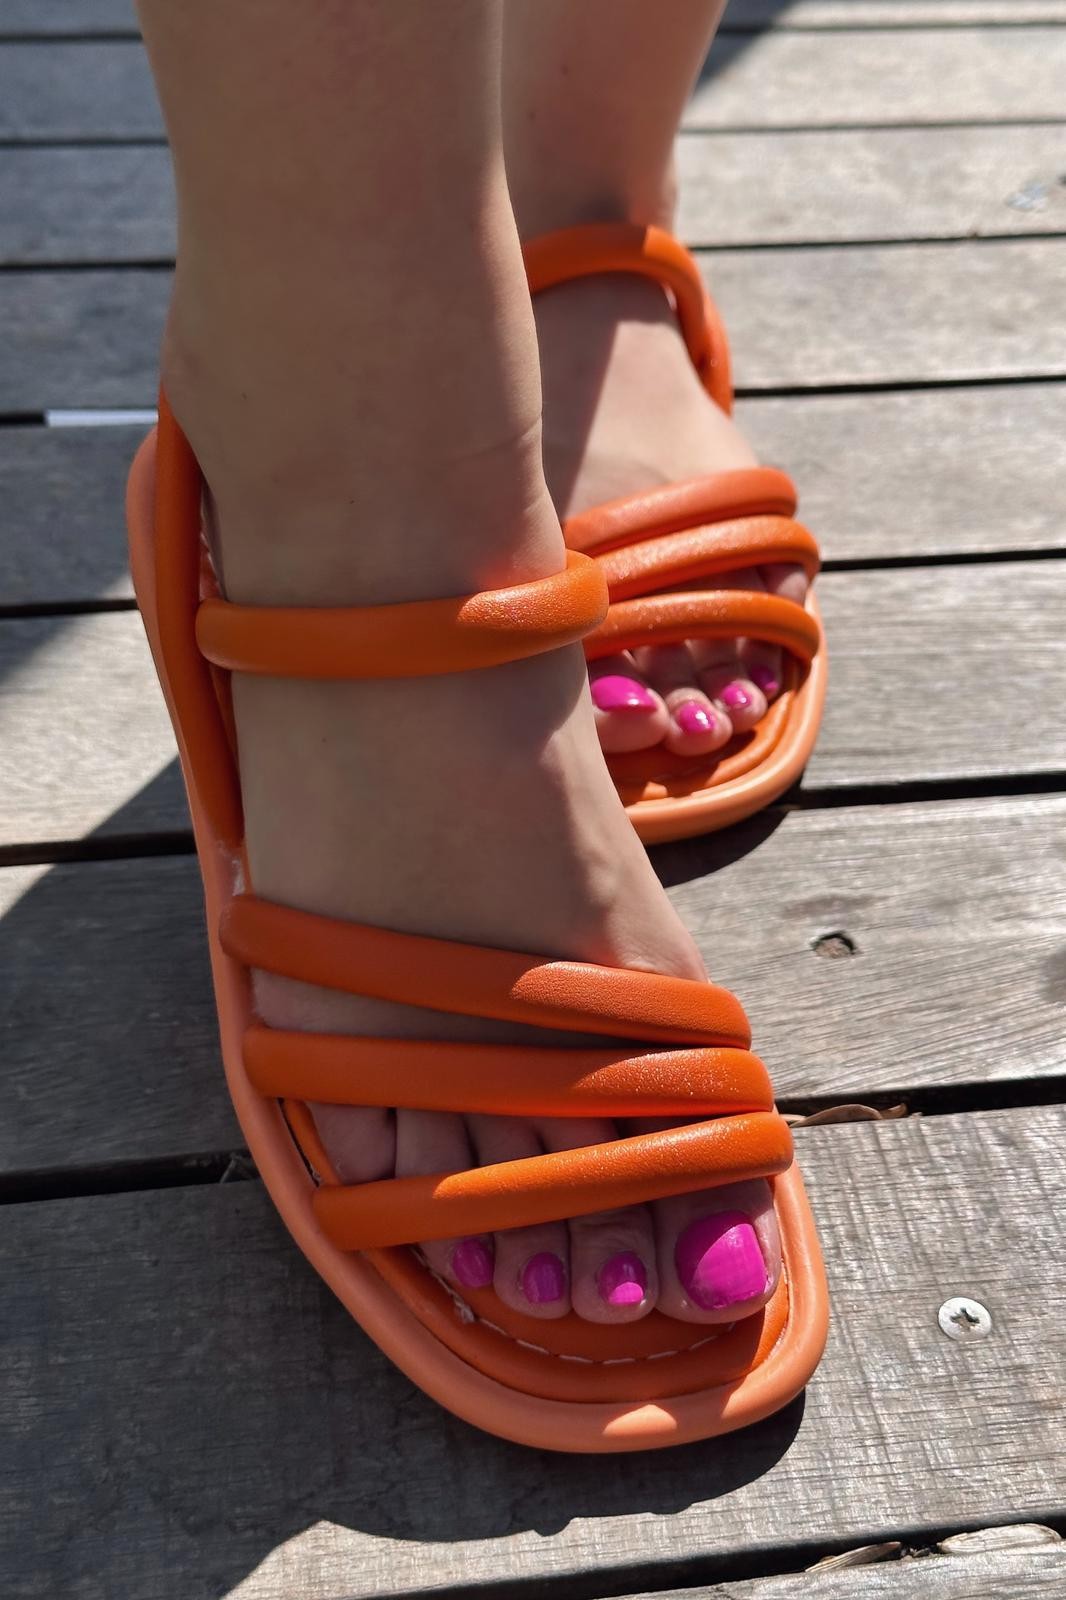 Sanpe matte leather woman sandals orange